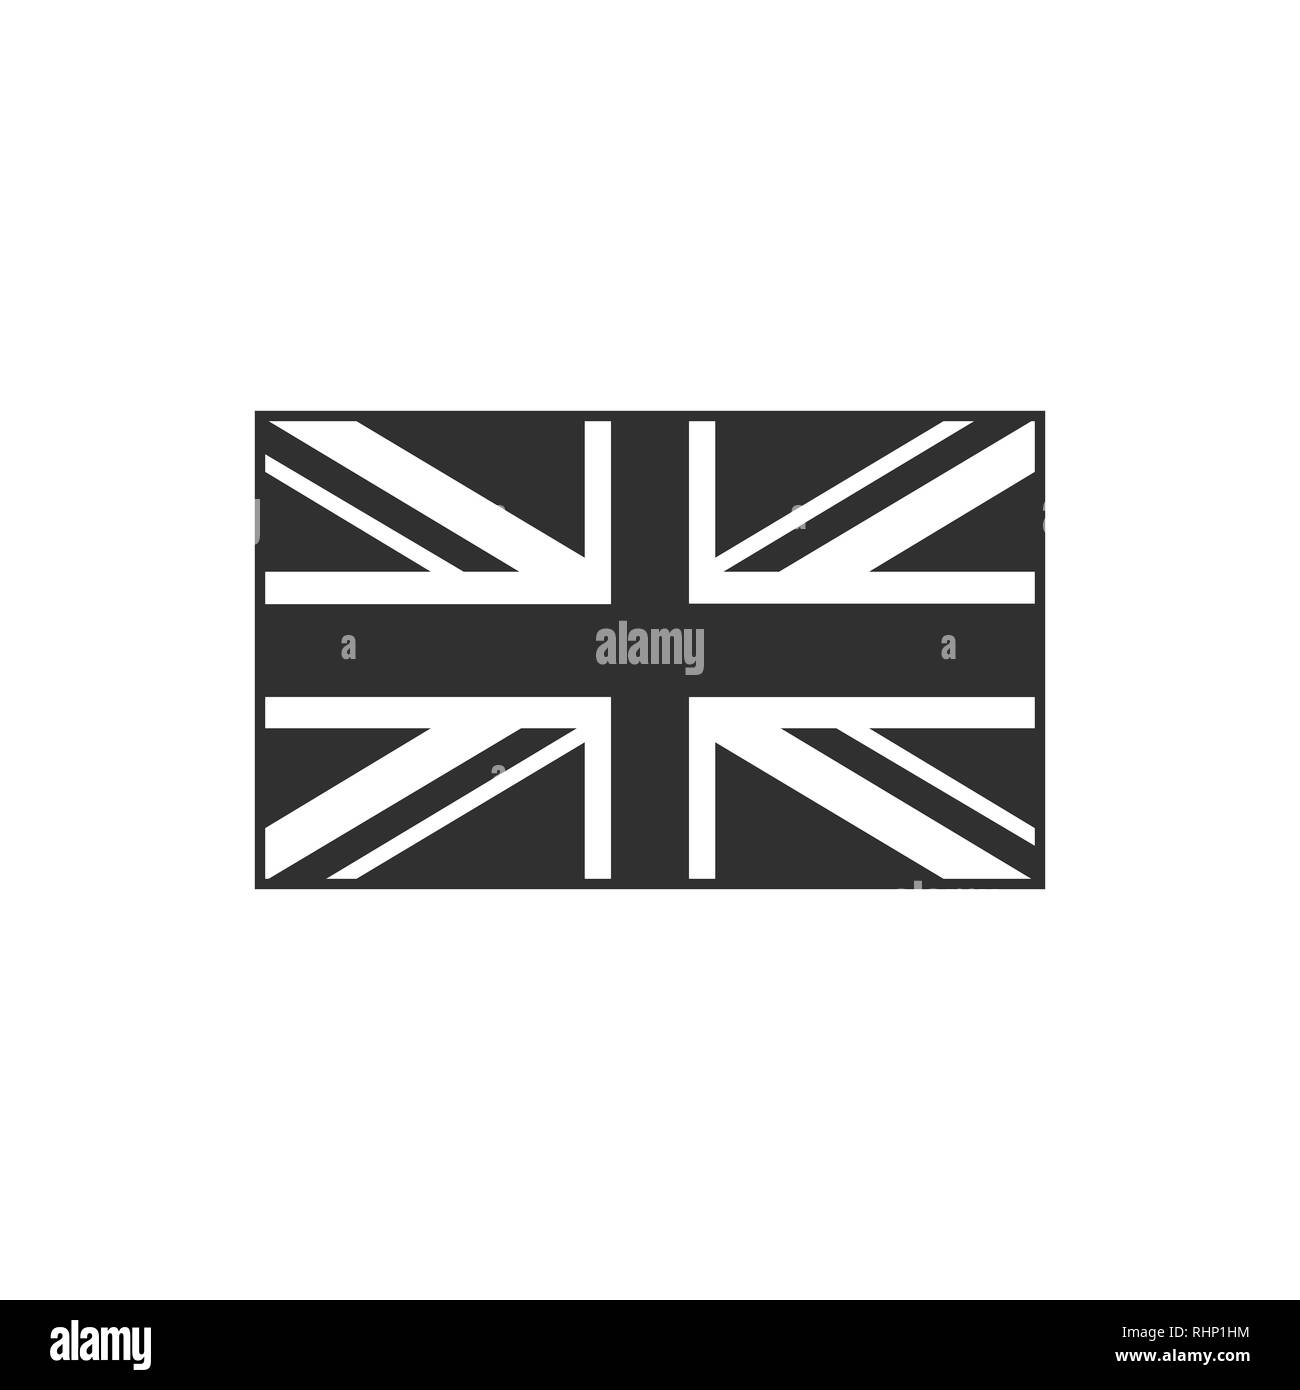 Großbritannien Flagge Symbol in schwarzer Umriss flache Bauform. Tag der Unabhängigkeit oder der nationalen Feiertag Konzept. Stock Vektor